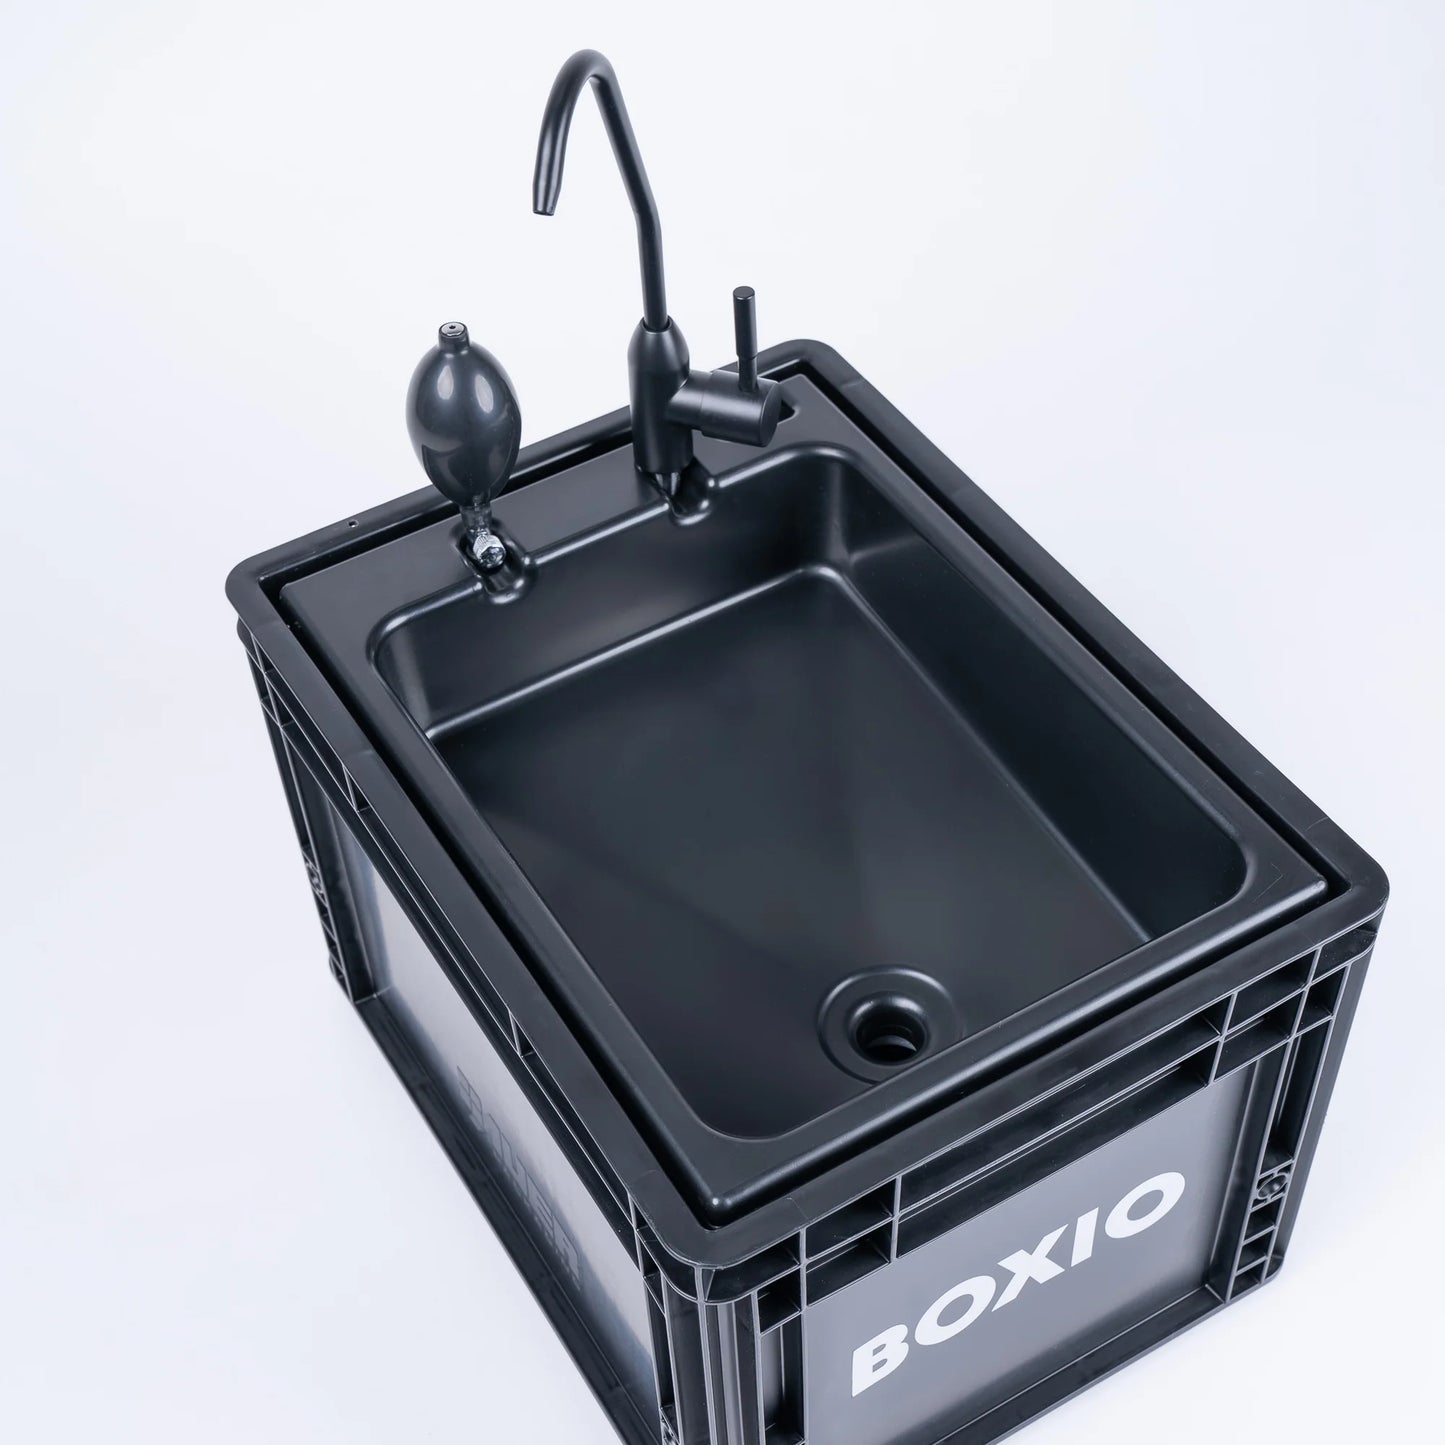 Dein mobiles Waschbecken: BOXIO-Wash